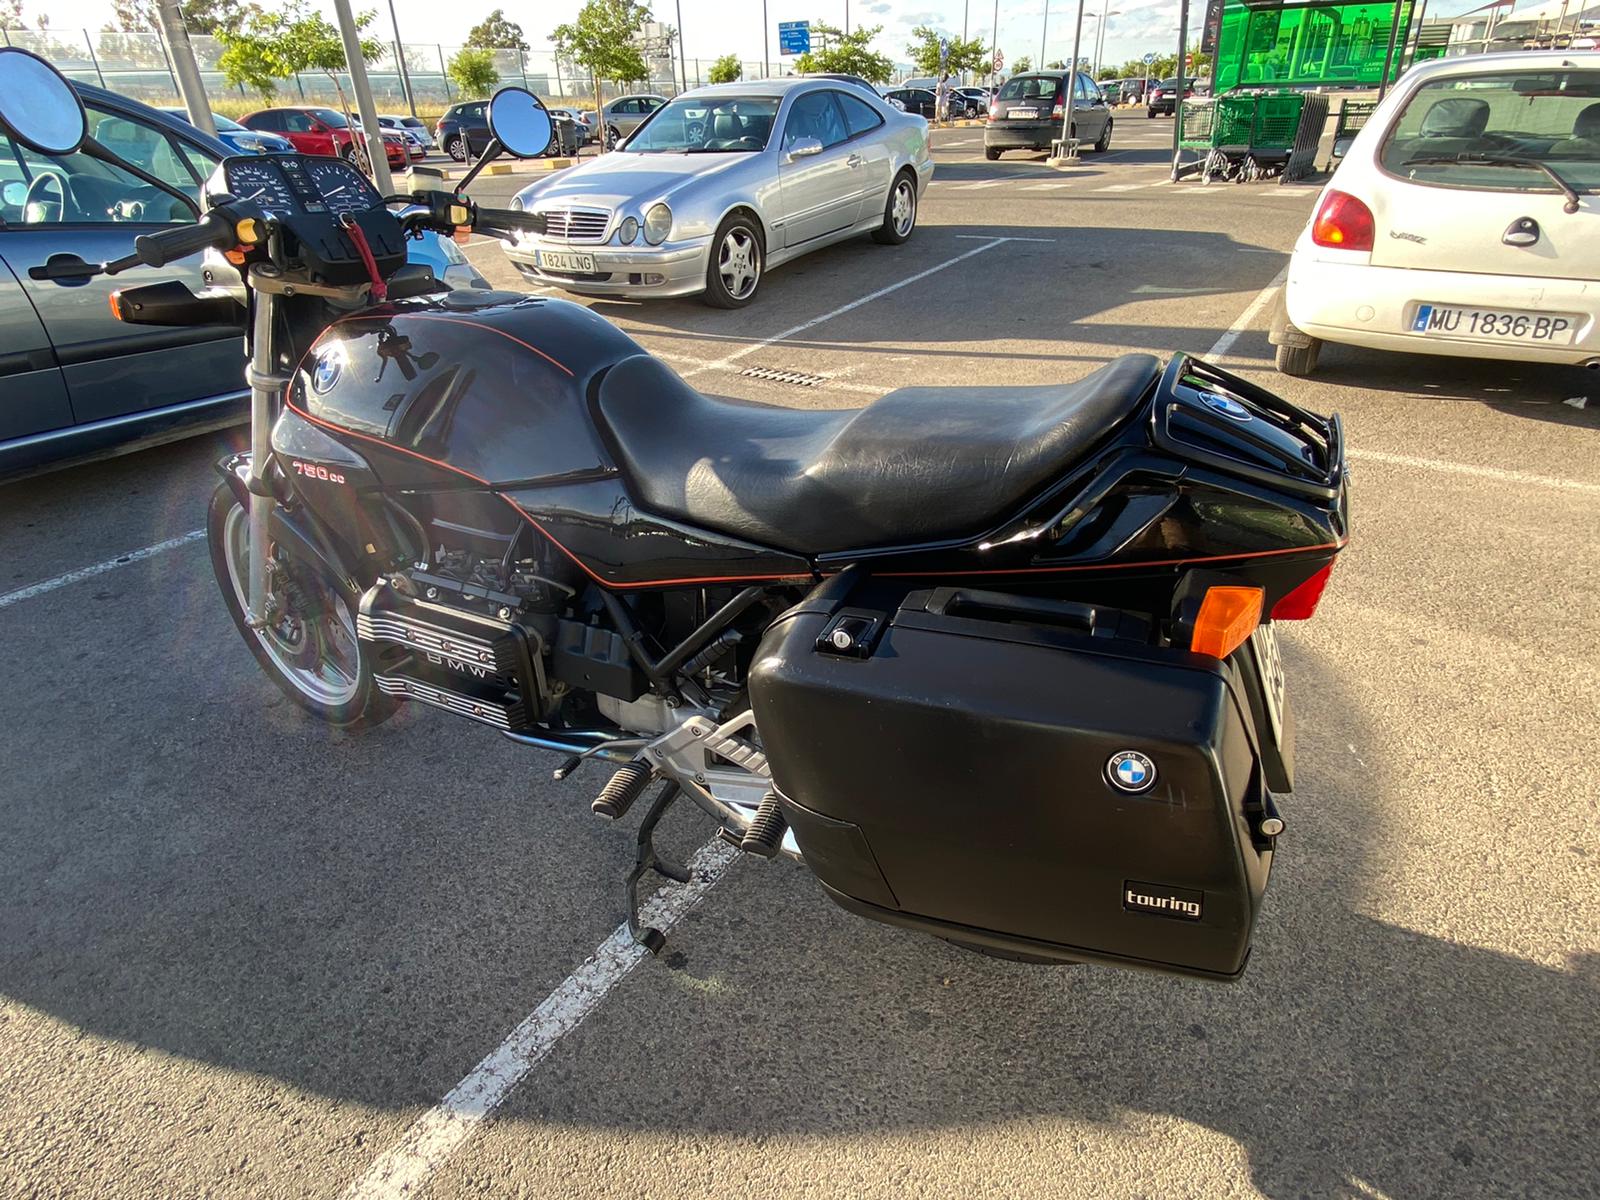 Motocykl BMWK75